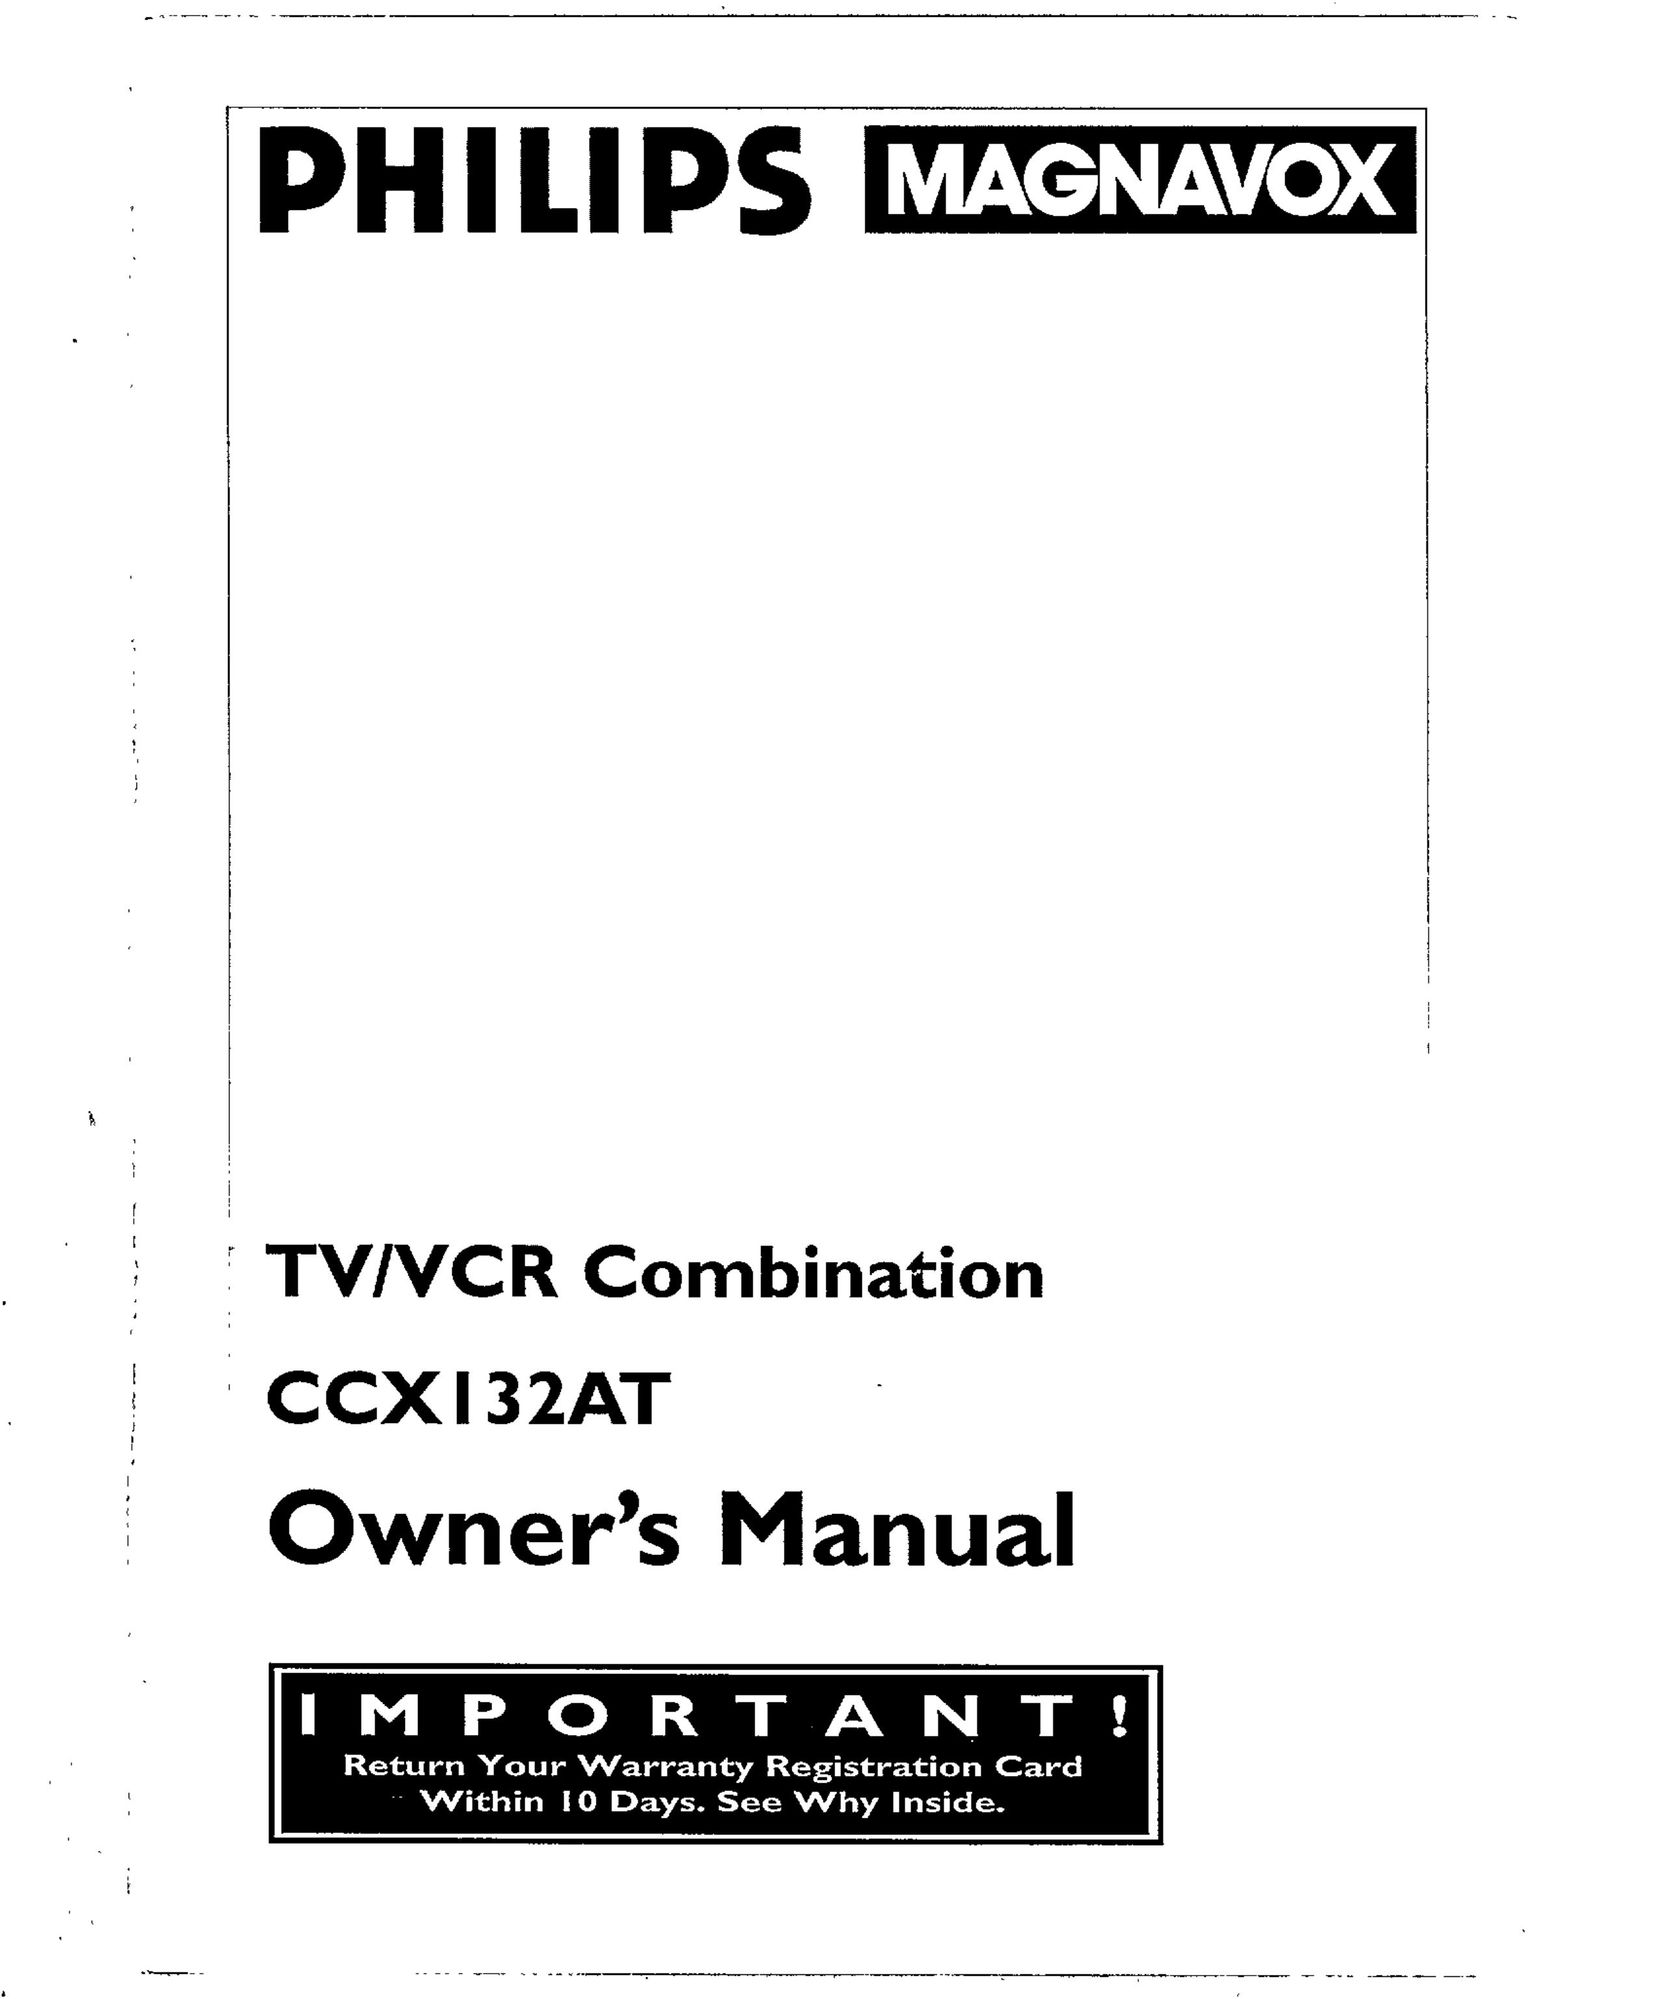 Magnavox CCX132AT VCR User Manual